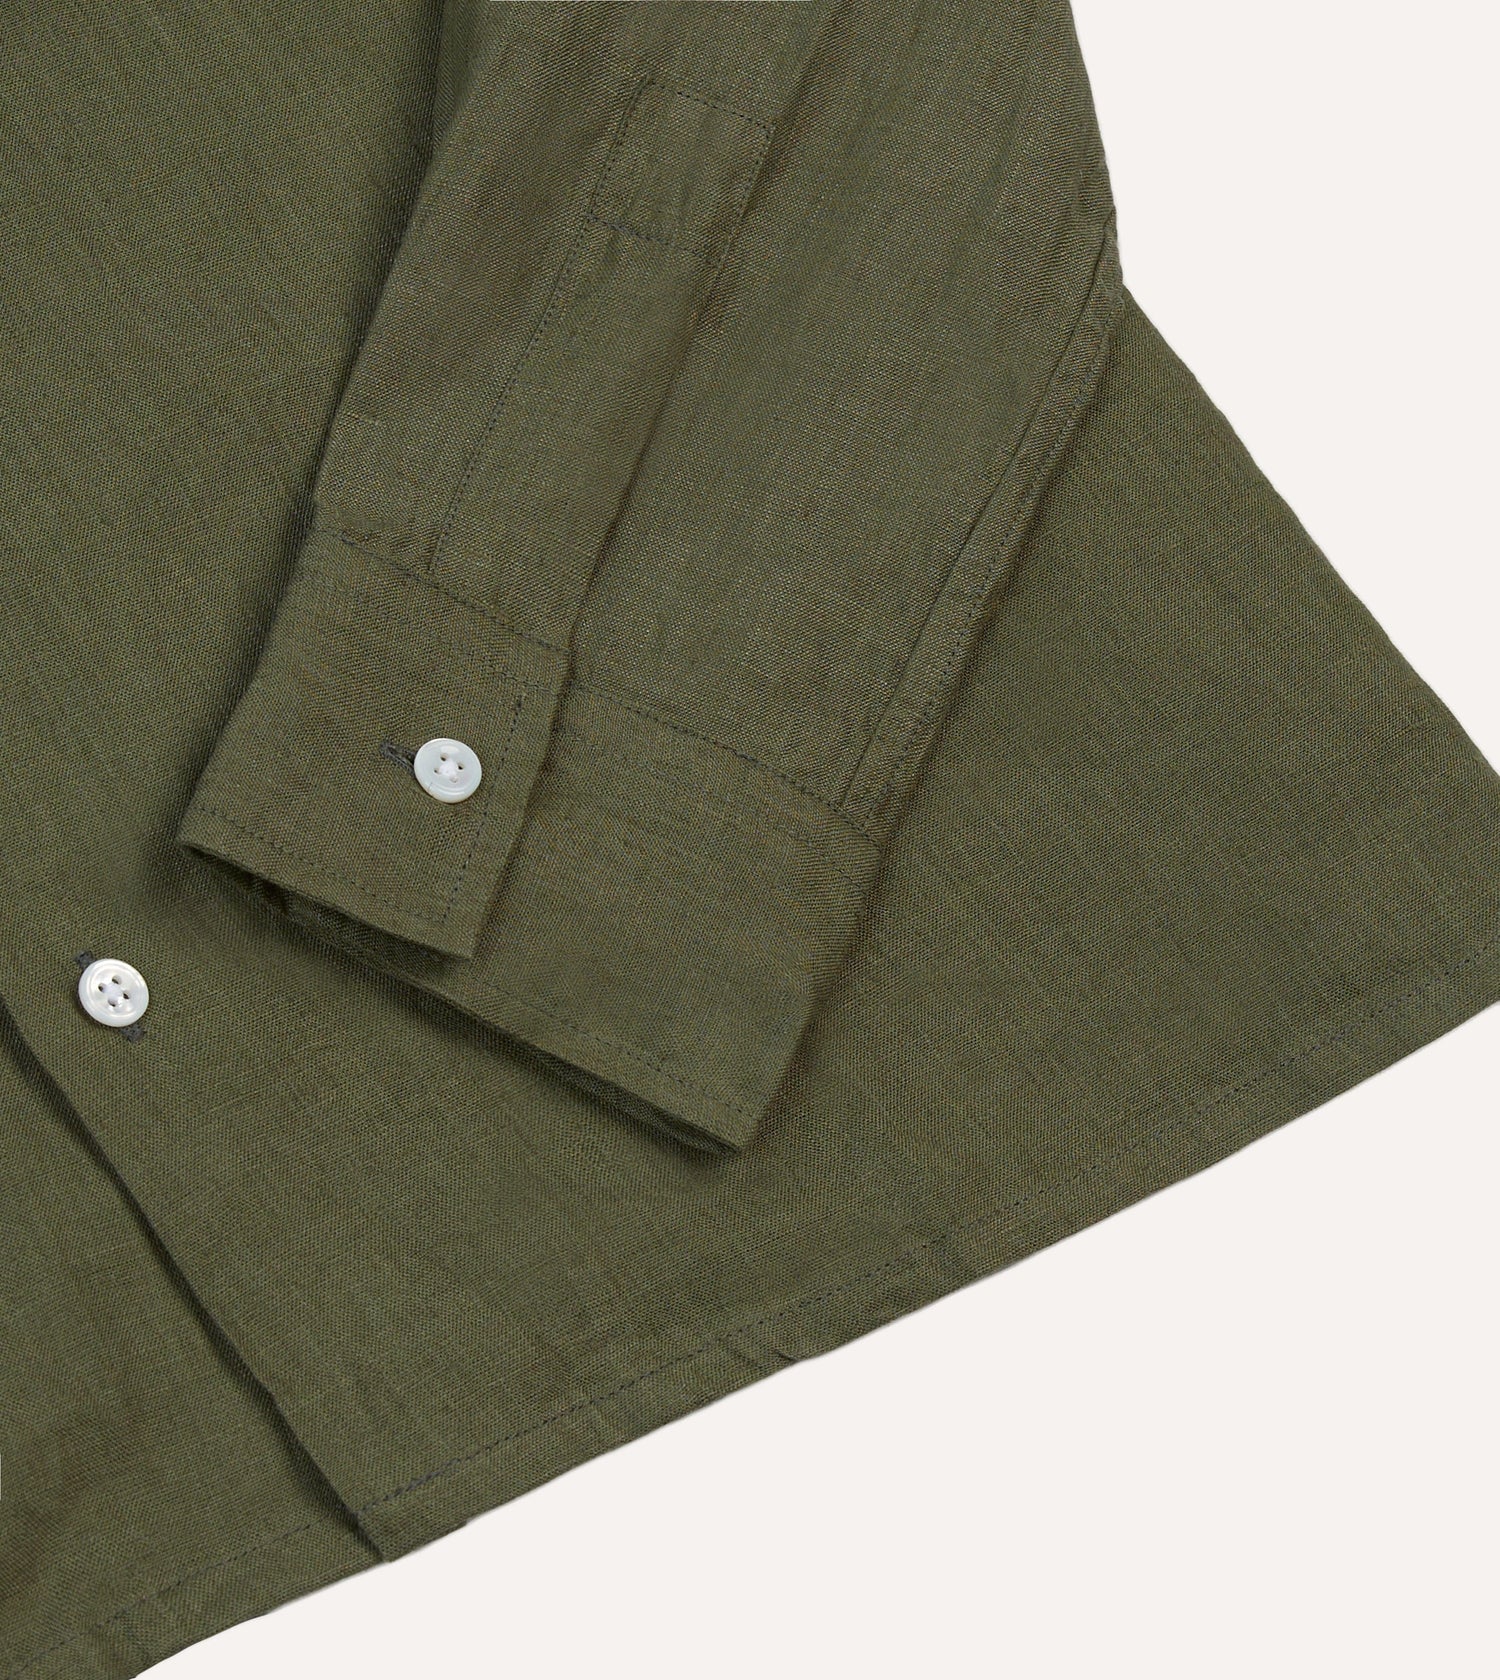 Khaki Linen Camp Collar Long Sleeve Shirt